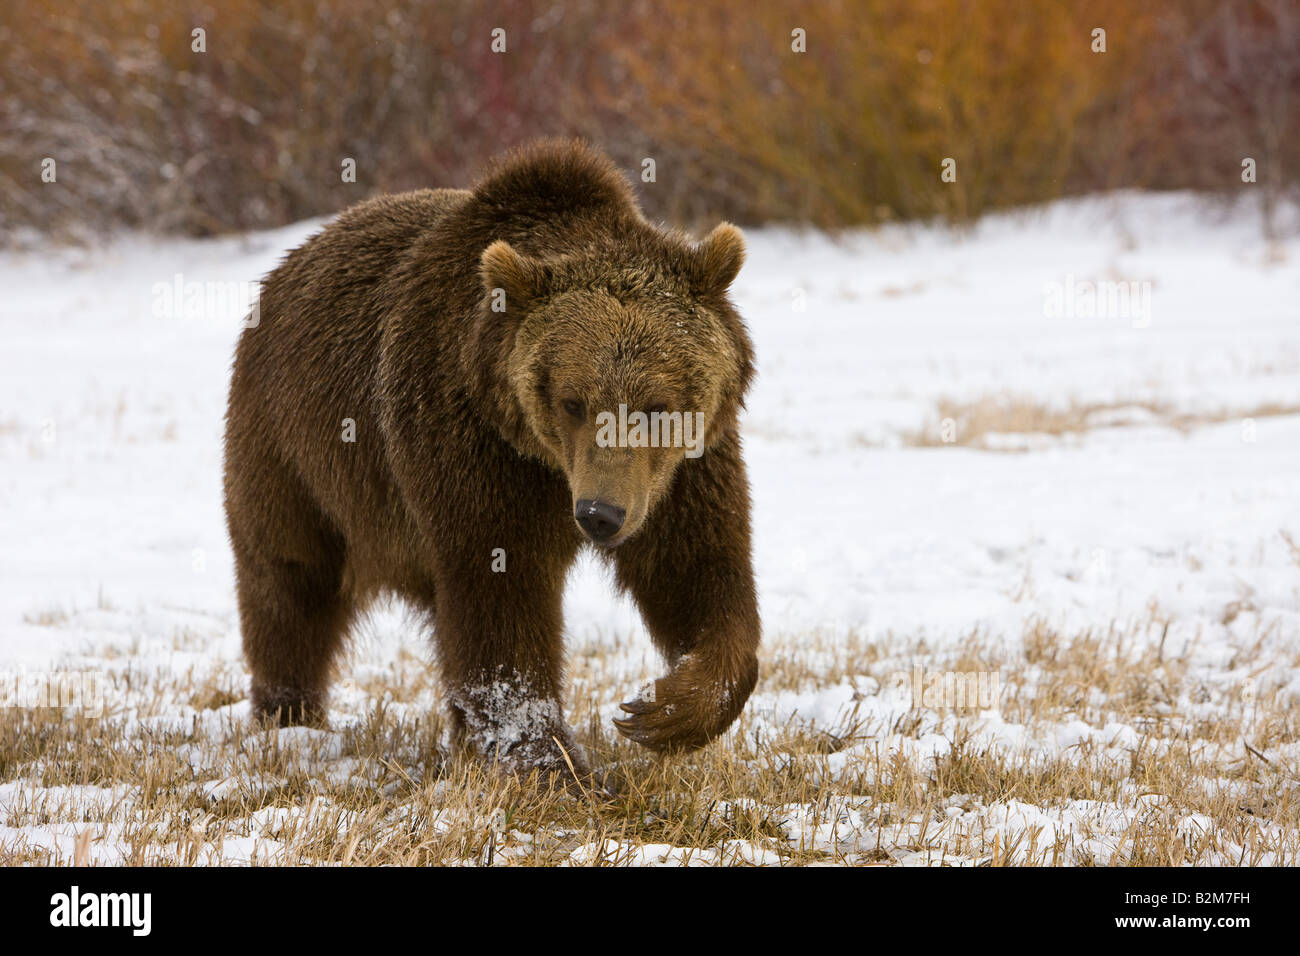 Un grizzly marchant à travers une prairie enneigée. (Captive) Banque D'Images